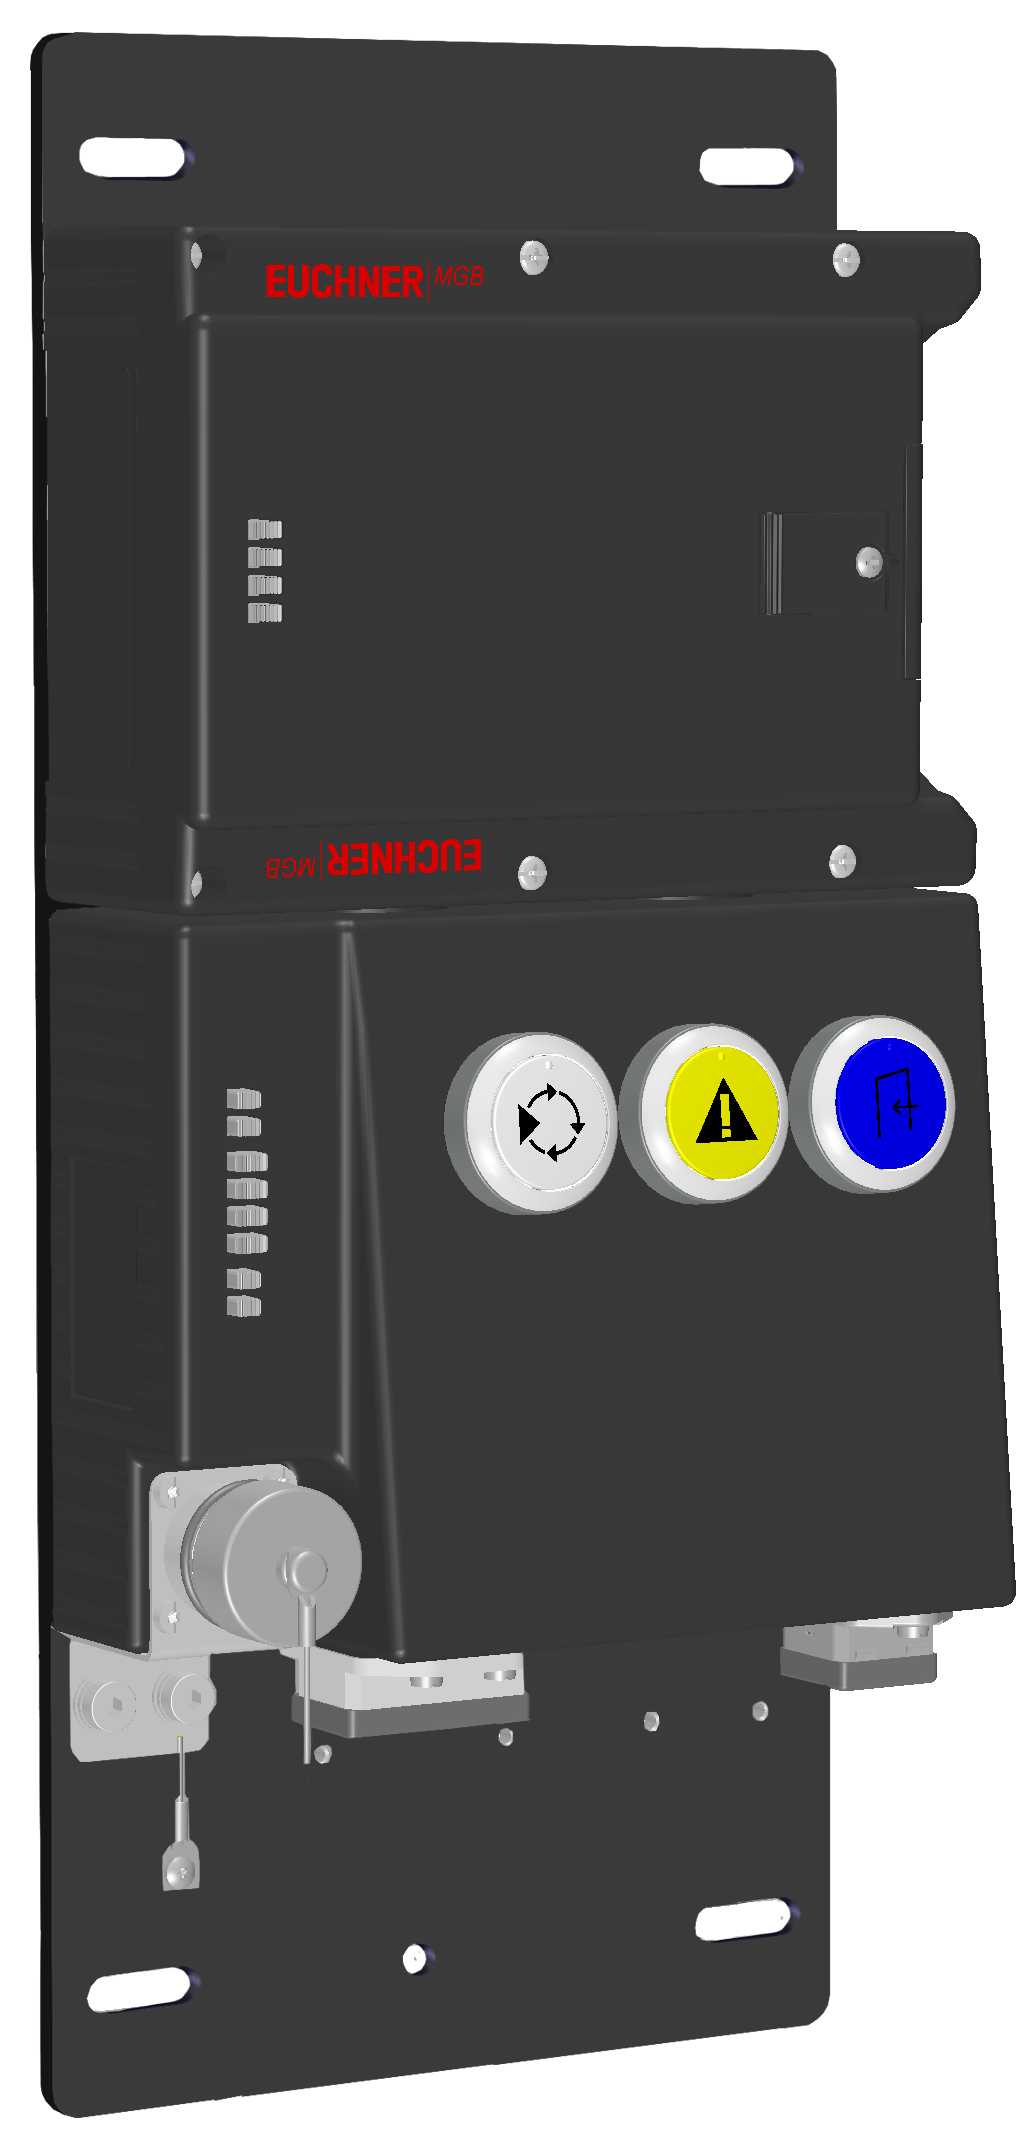 Vyhodnocovací moduly s jištěním ochranného krytu MGB-L1B-PNC-R-116517  (Obj. č. 116517)